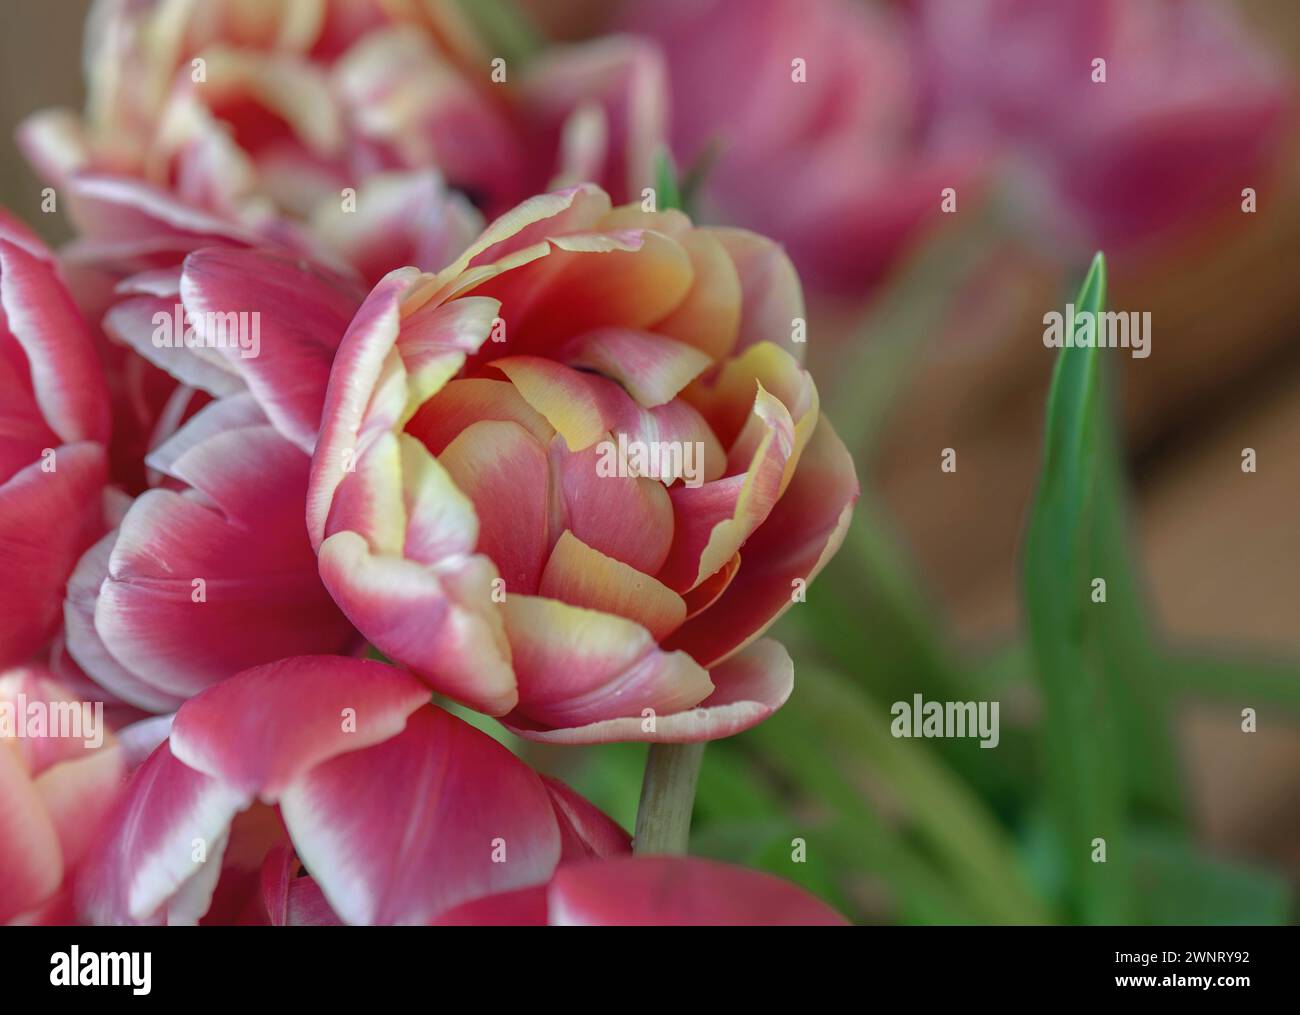 Nahaufnahme einer wunderschönen rosa und gelben doppelblühenden Tulpe in einem Blumenstrauß Stockfoto